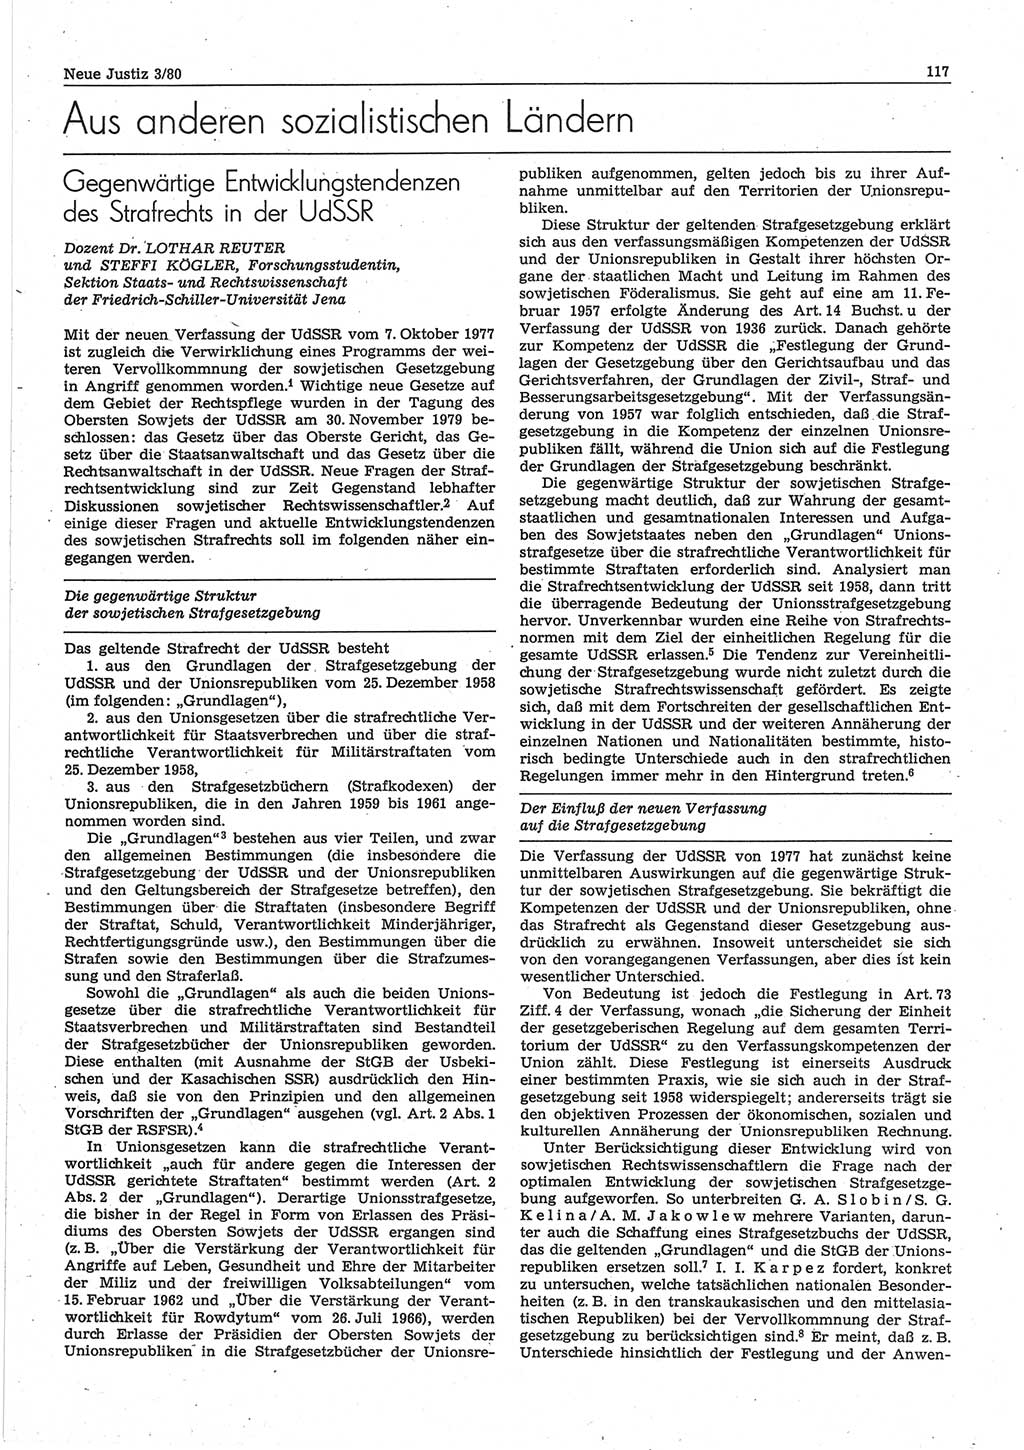 Neue Justiz (NJ), Zeitschrift für sozialistisches Recht und Gesetzlichkeit [Deutsche Demokratische Republik (DDR)], 34. Jahrgang 1980, Seite 117 (NJ DDR 1980, S. 117)